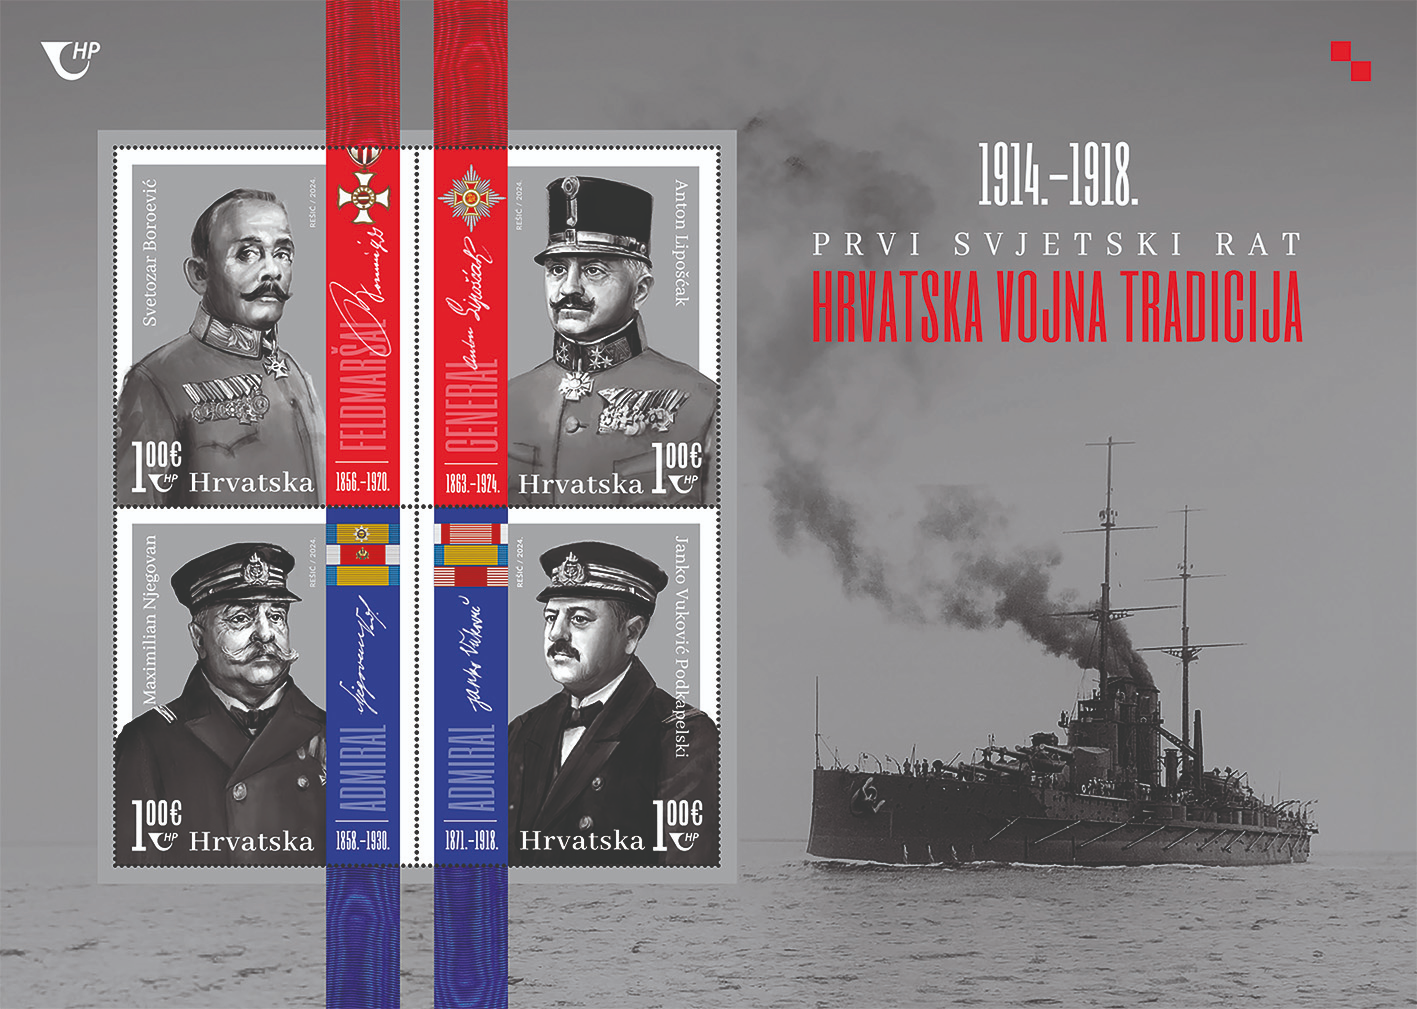 Hrvatska vojna tradicija na poštanskim markama